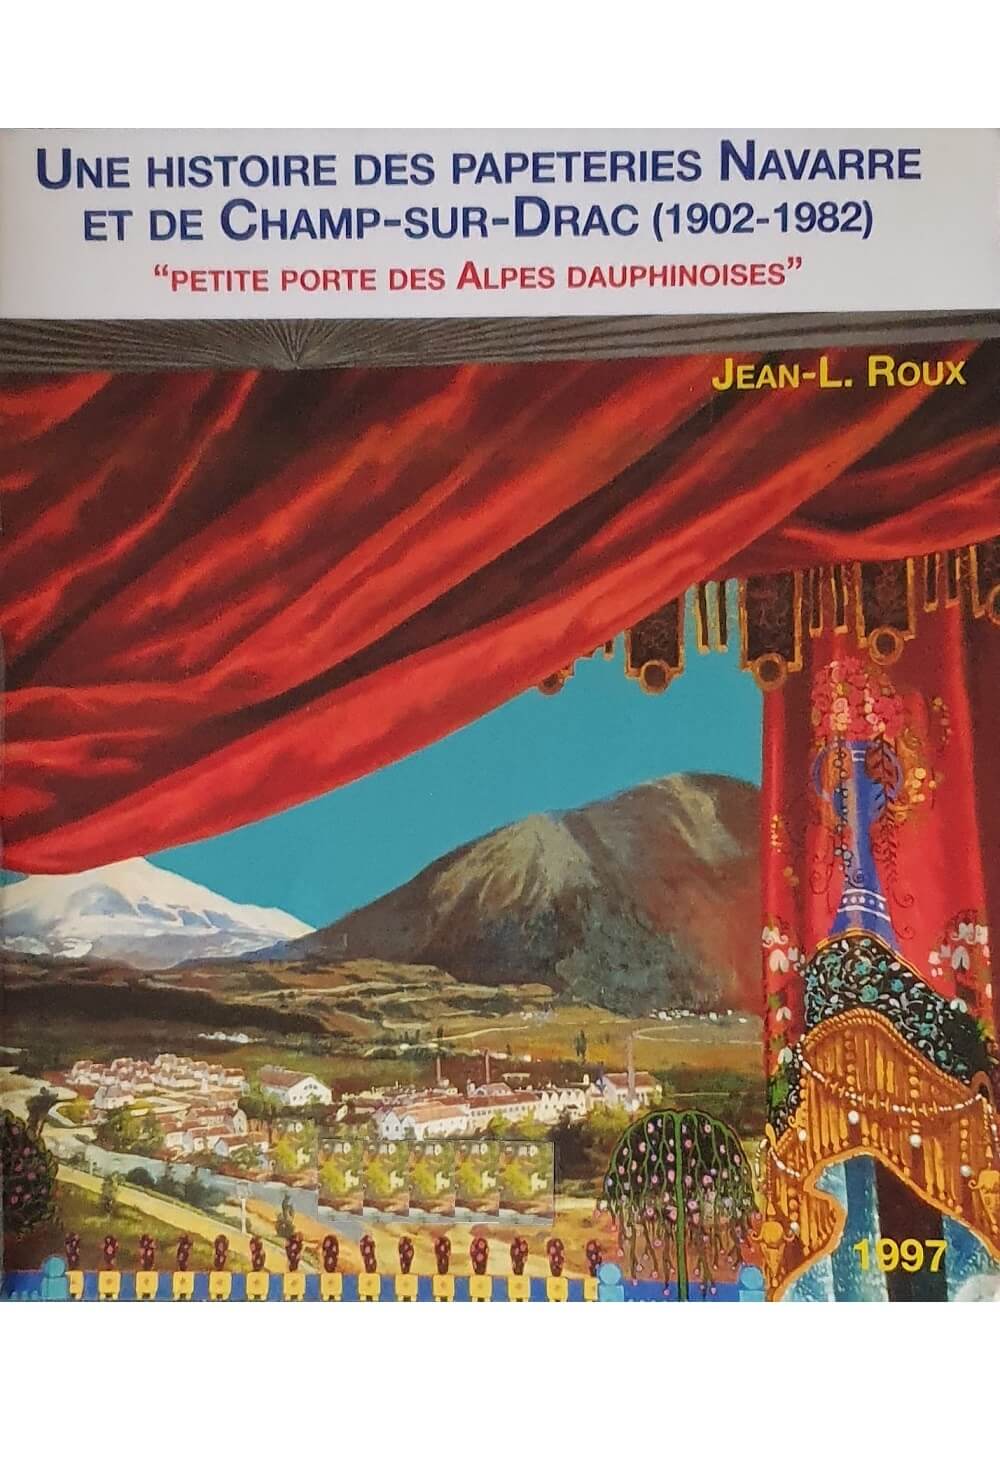 Histoire Papeteries Navarre et Champ-sur-Drac : couverture du livre